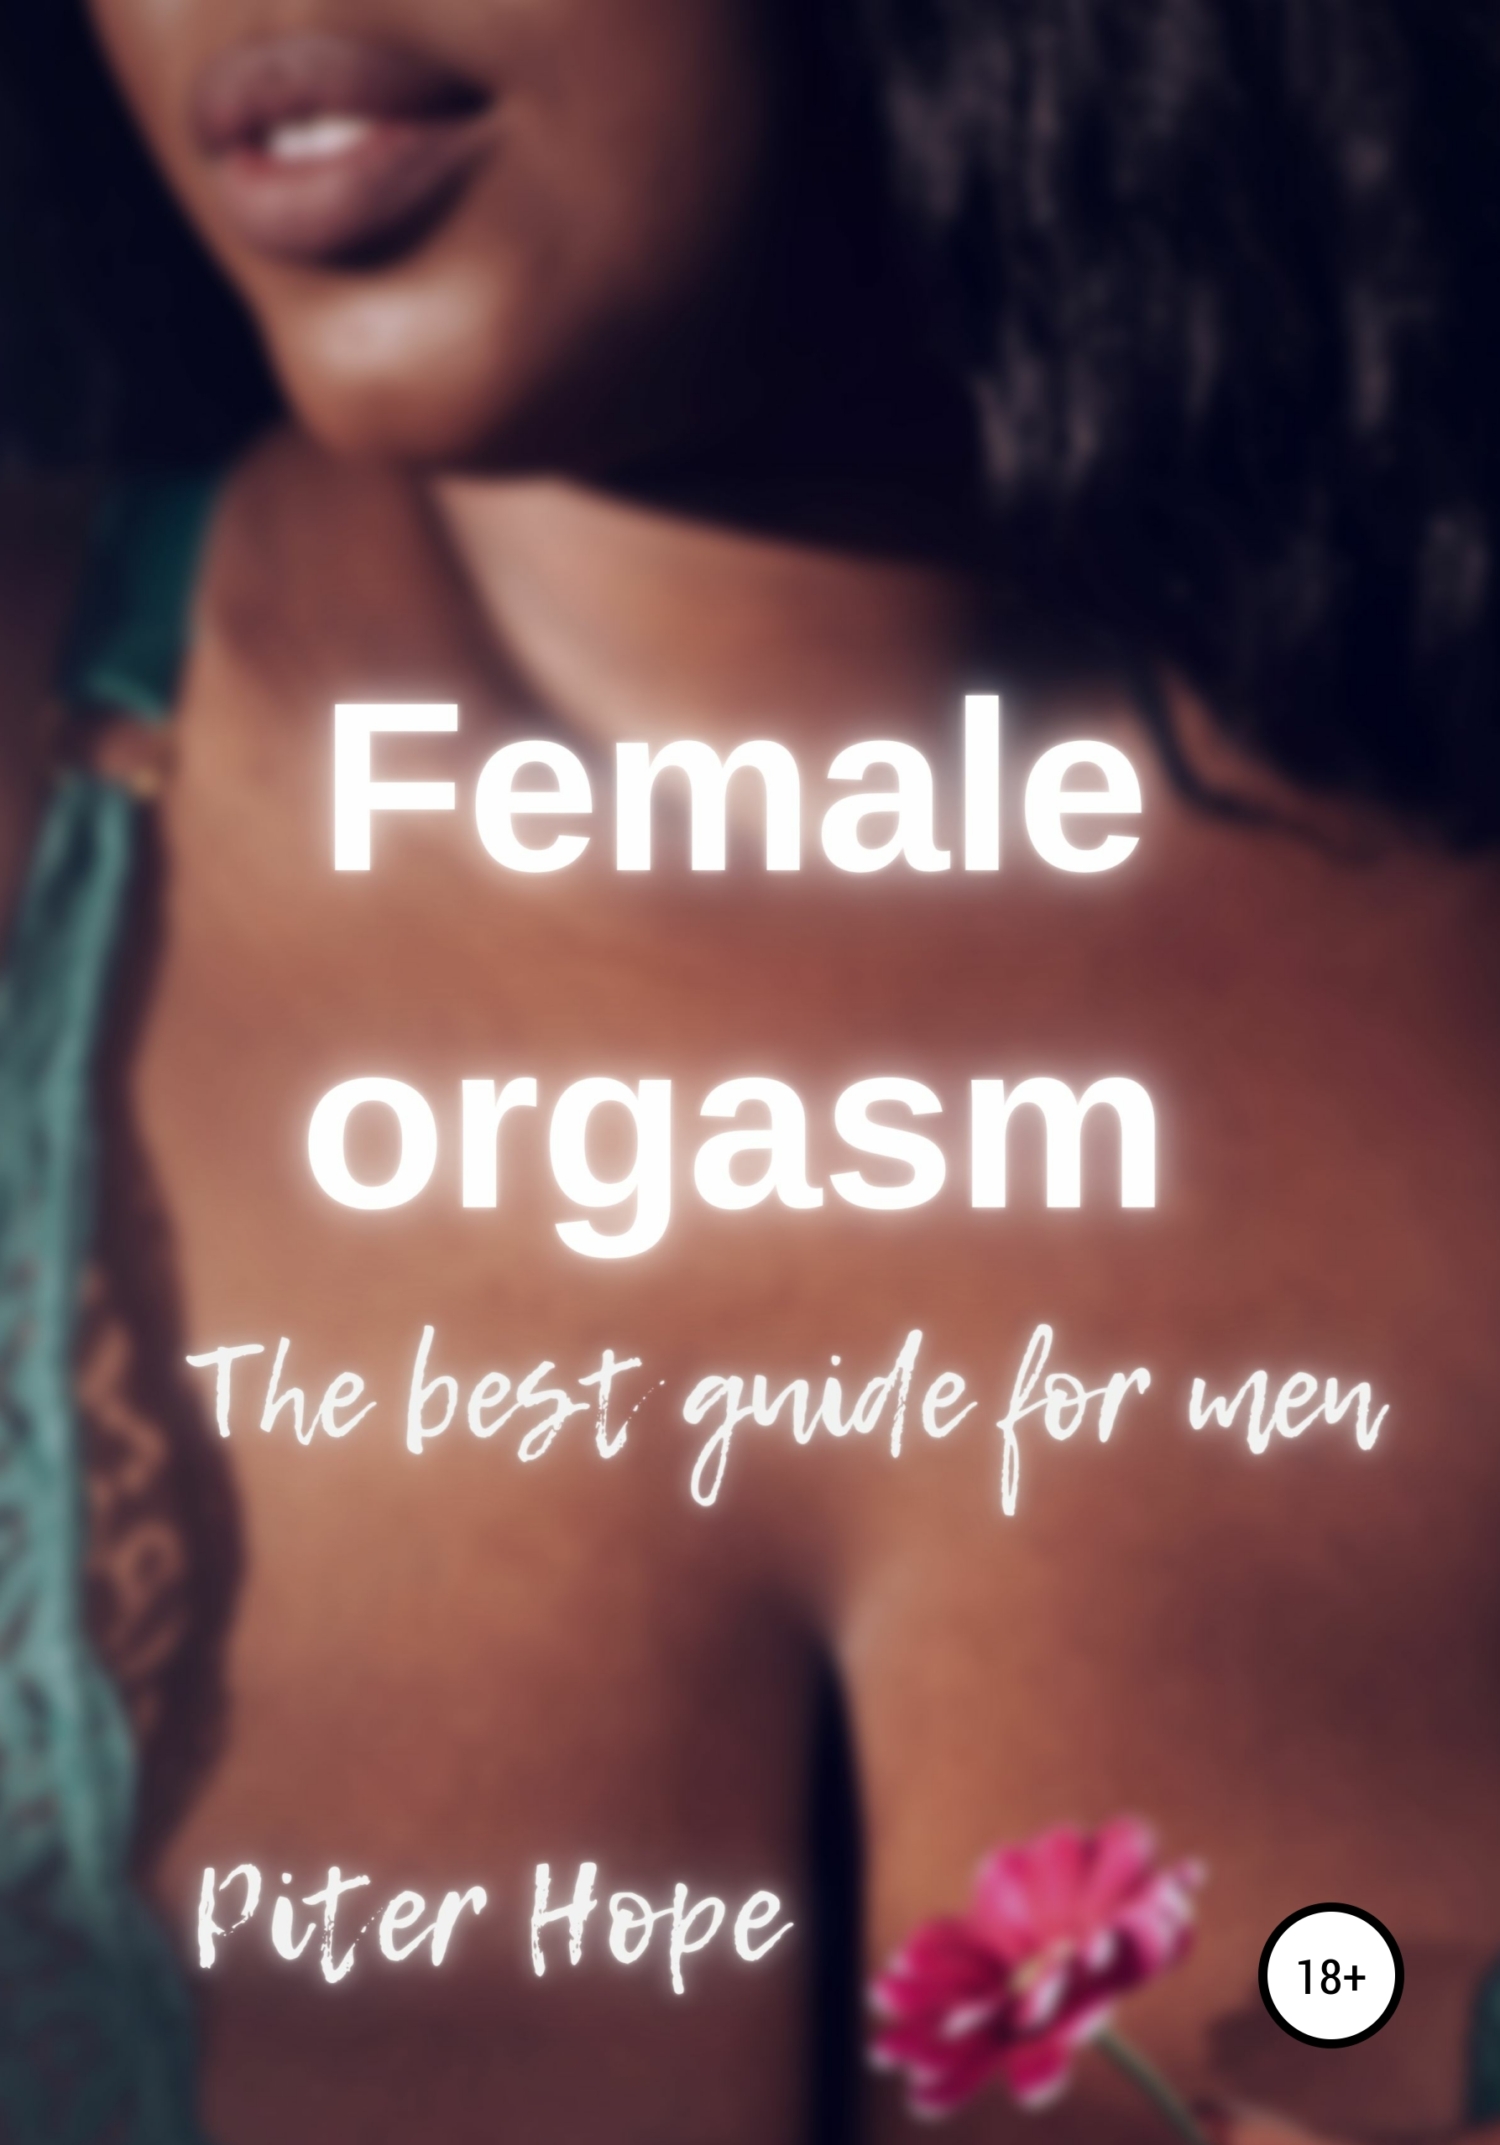 Женский оргазм. Лучшее руководство, Питер Хоуп – скачать книгу fb2, epub,  pdf на ЛитРес